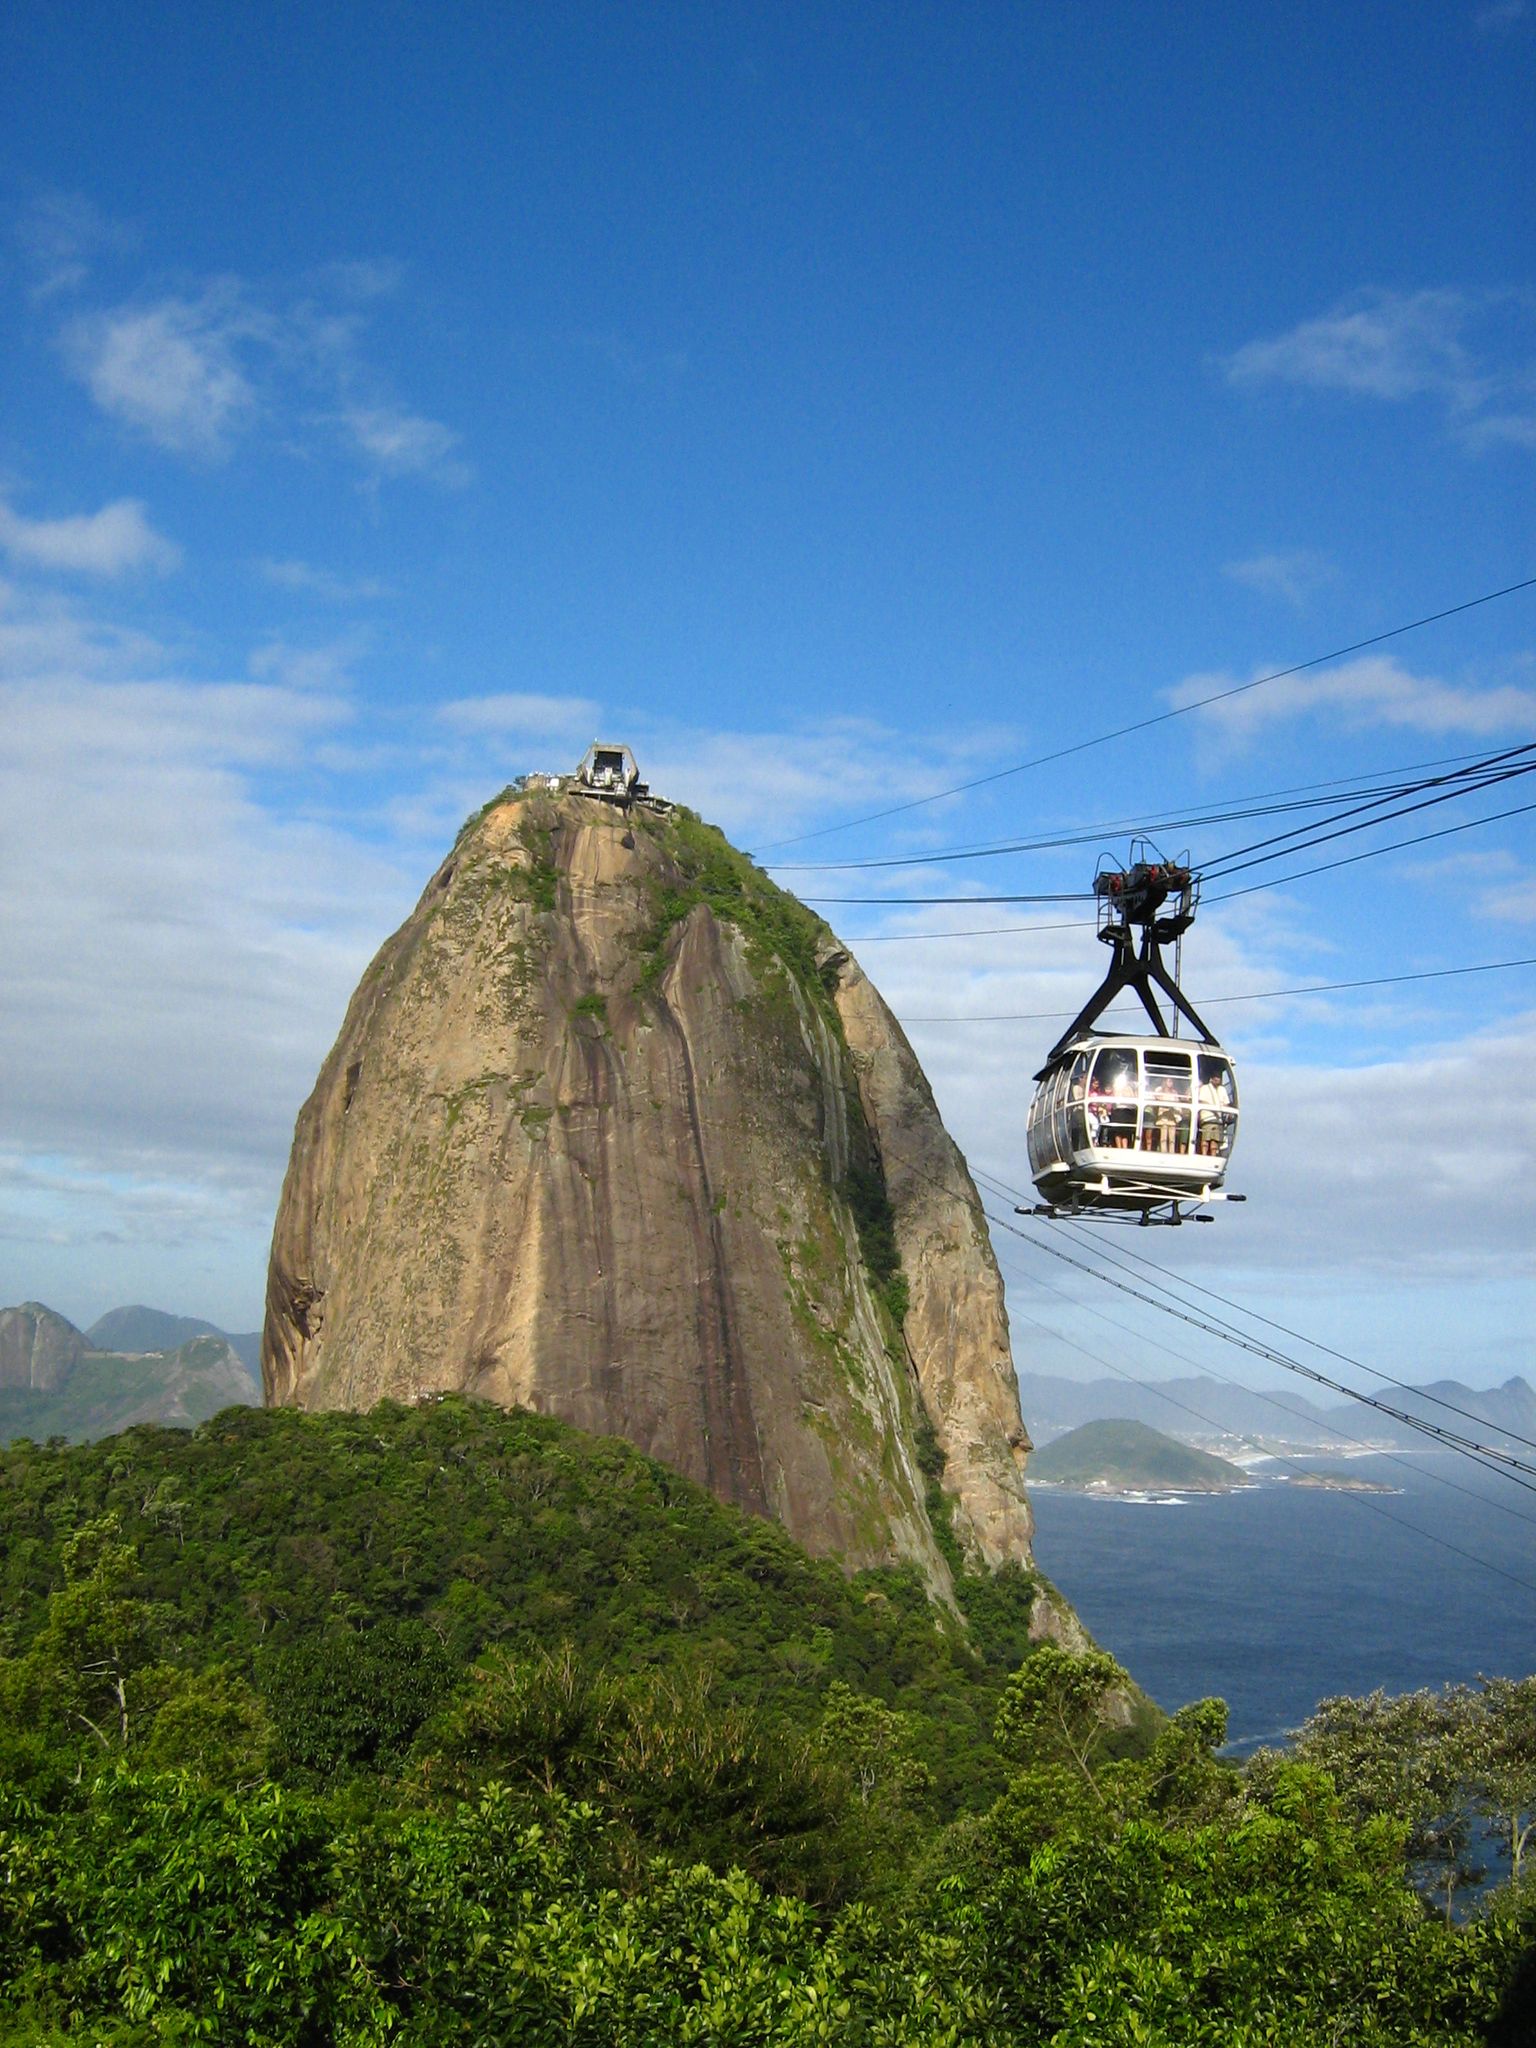 Suhkrupeamägi on Rio de Janeiro üks populaarsemaid atraktsioone, millele pääsemiseks tuleb end usaldada kaabeltrammide hoolde.